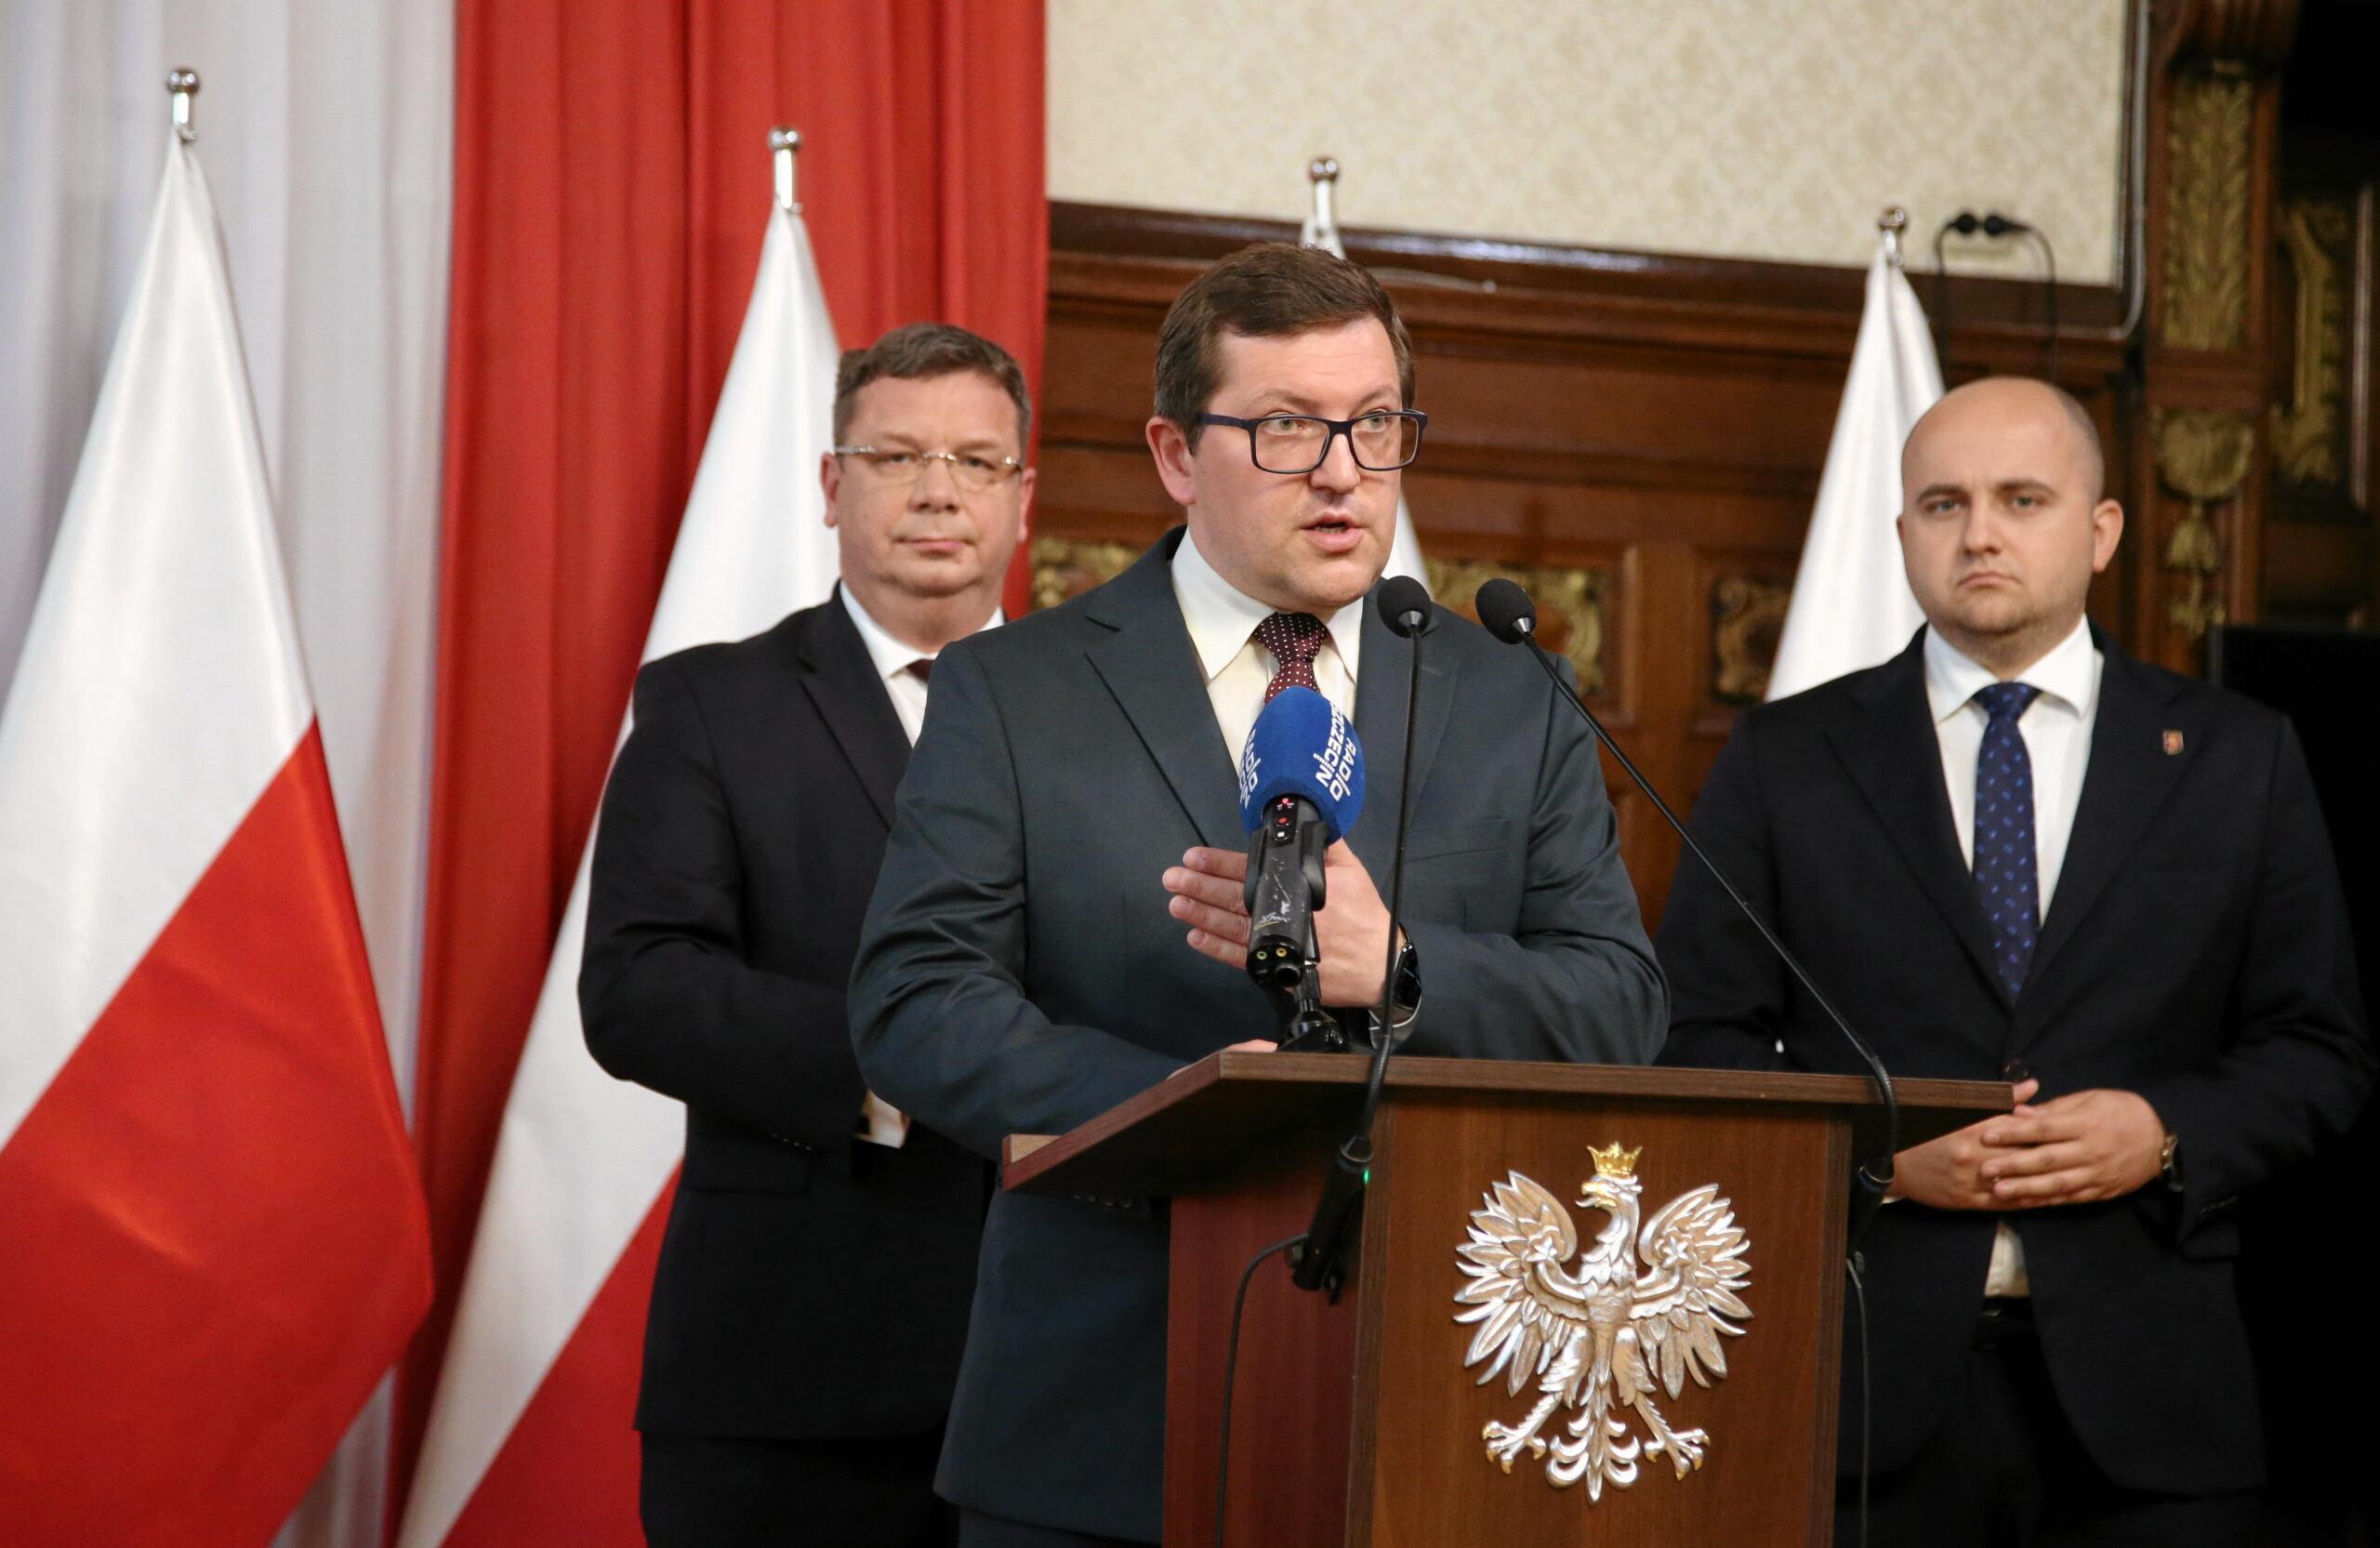 Mateusz Wagemann w stoi przy mównicy w towarzystwie Dariusza Mateckiego i Michała Wójcika z Solidarnej Polski